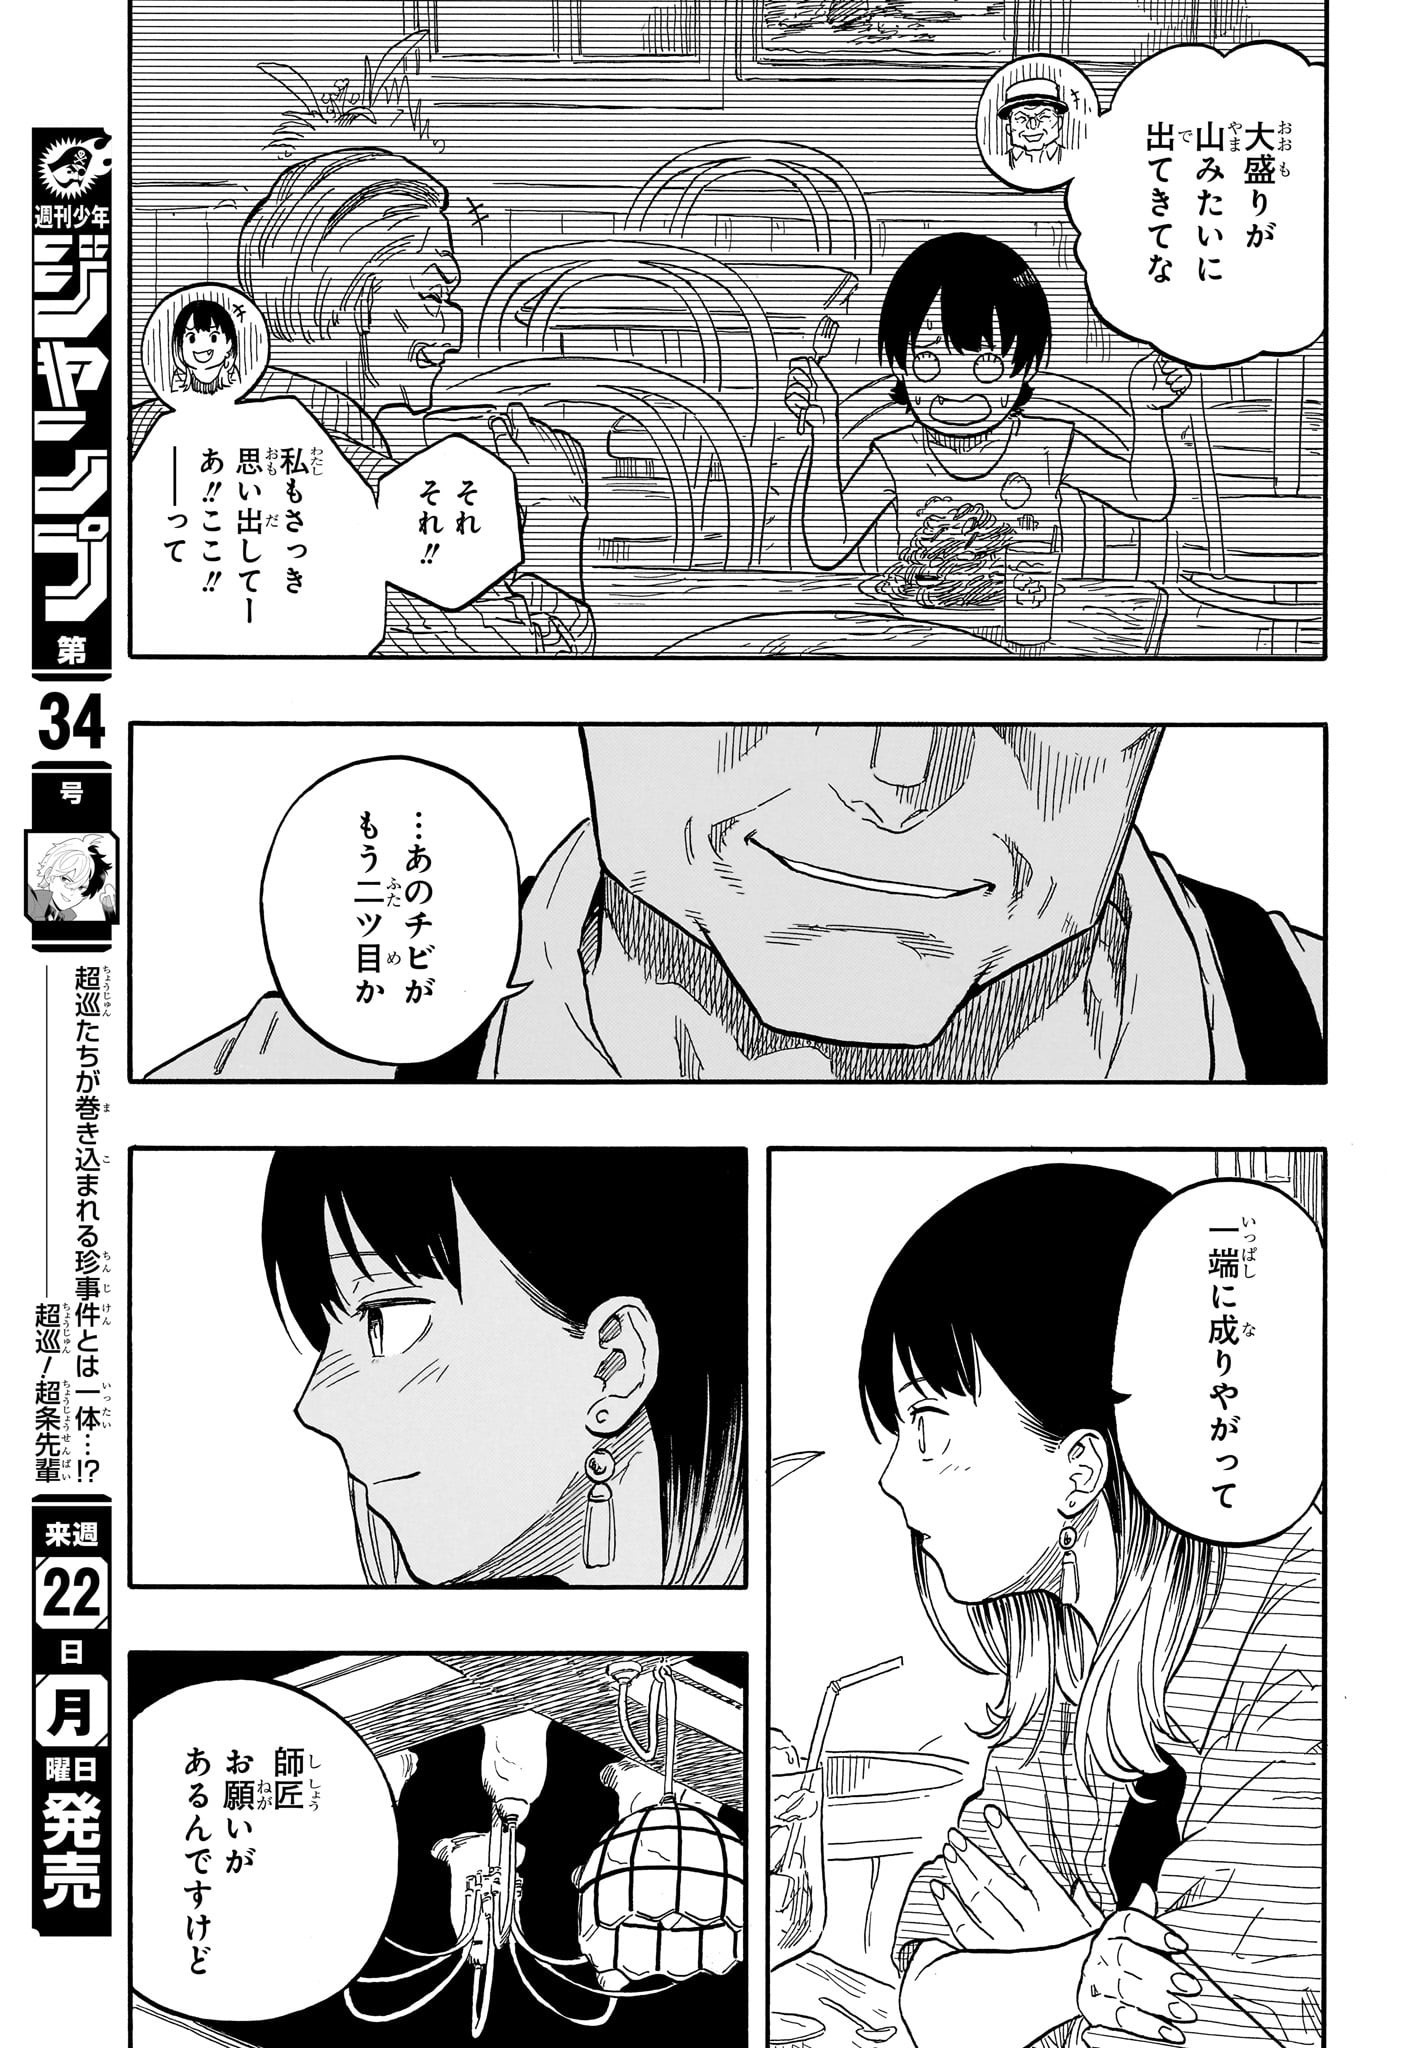 Akane-Banashi - Chapter 118 - Page 17